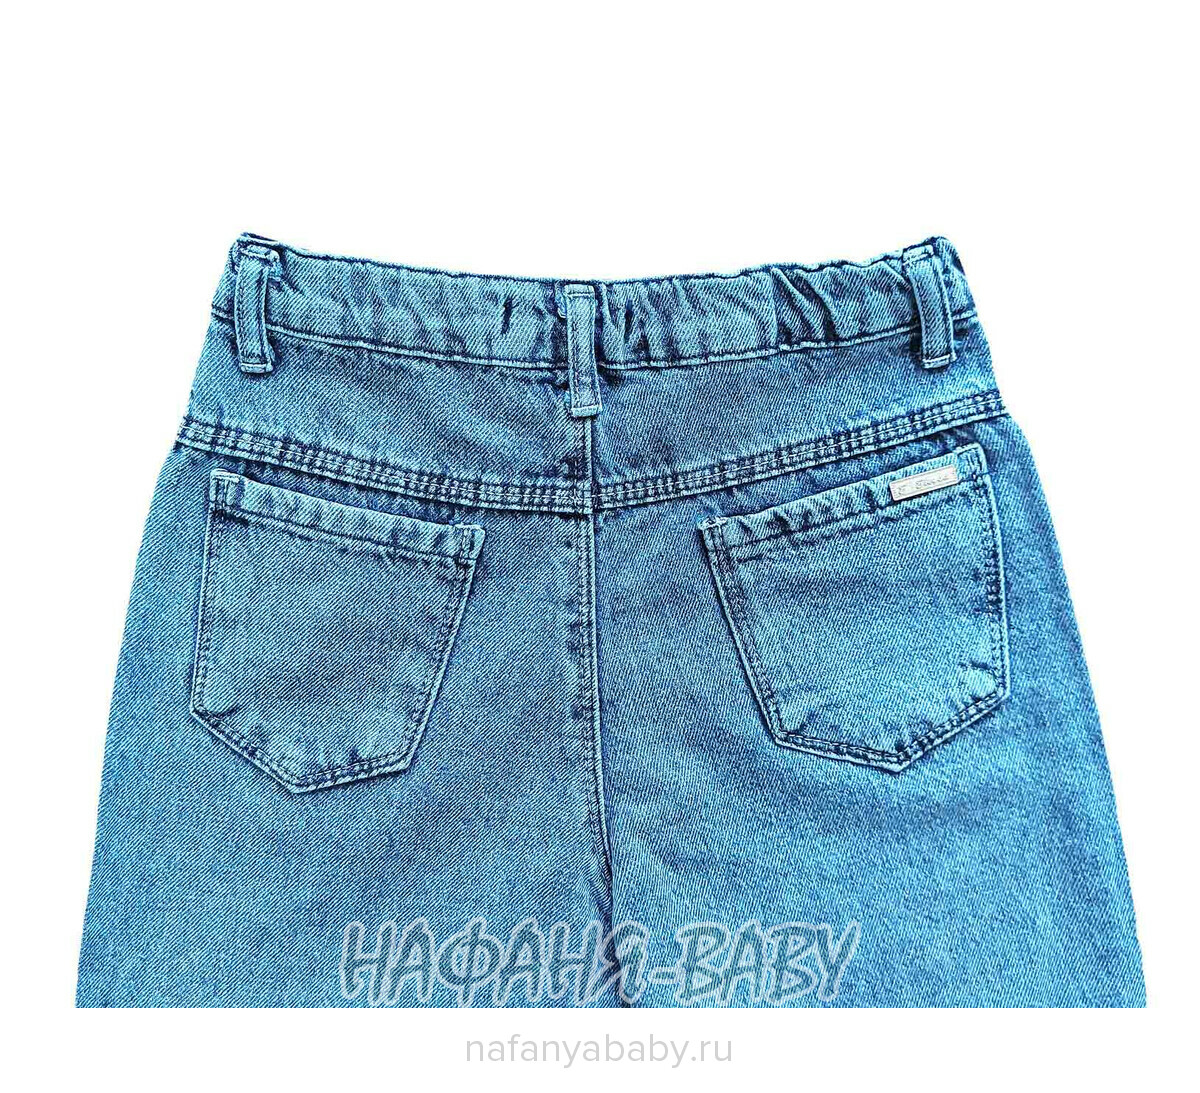 Джинсы ELEYSA Jeans арт: 65812 для девочки от 8 до 12 лет, цвет синий, оптом Турция